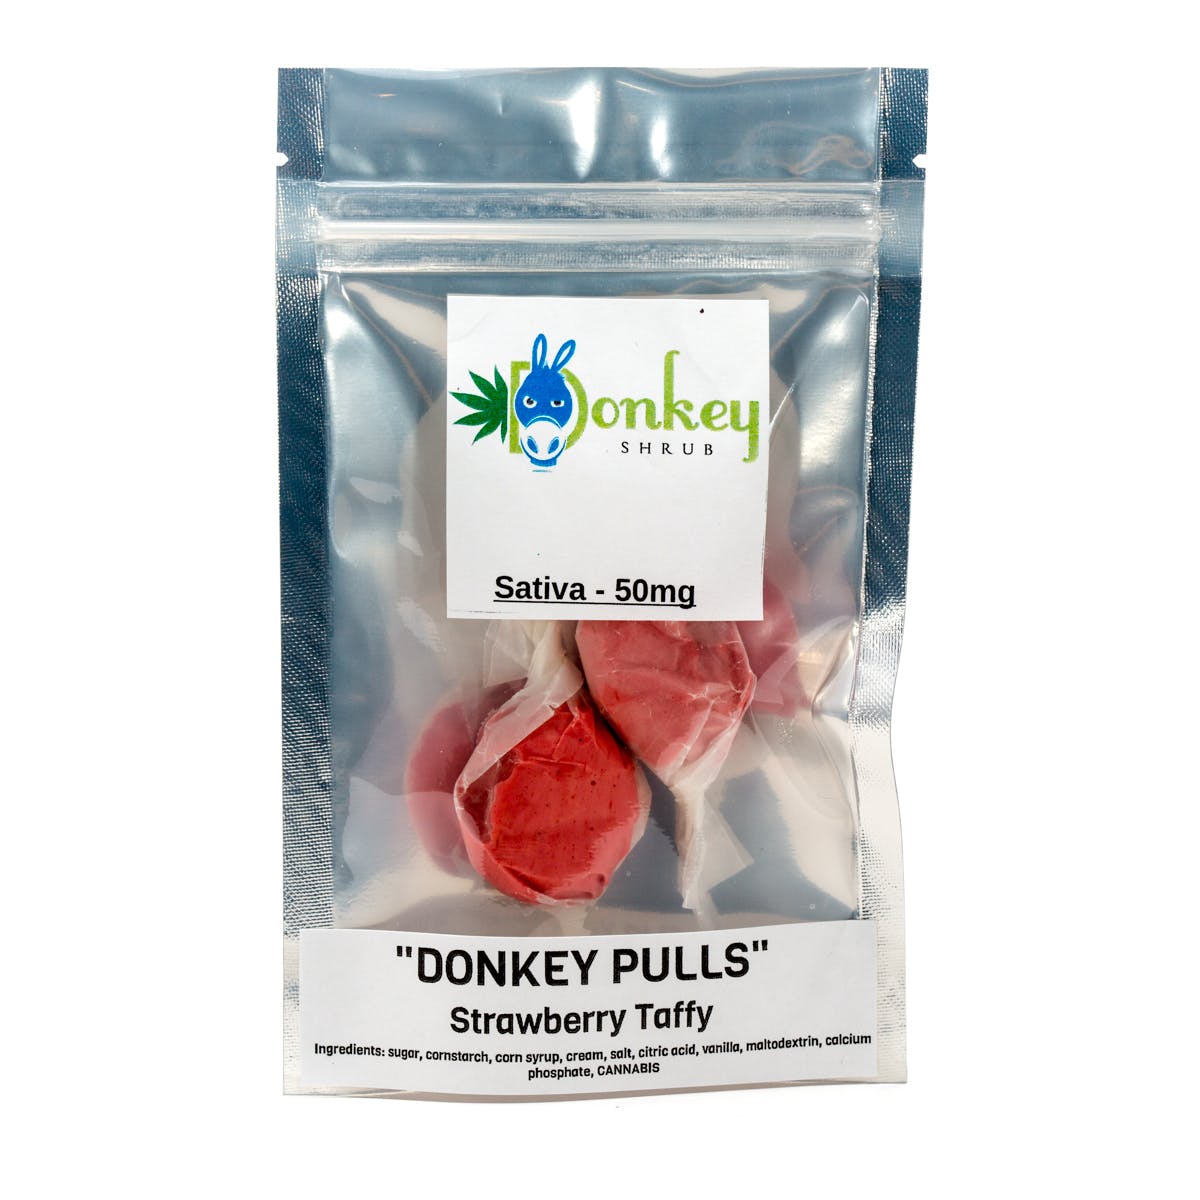 Donkey Pulls Strawberry Taffy - Sativa 50mg